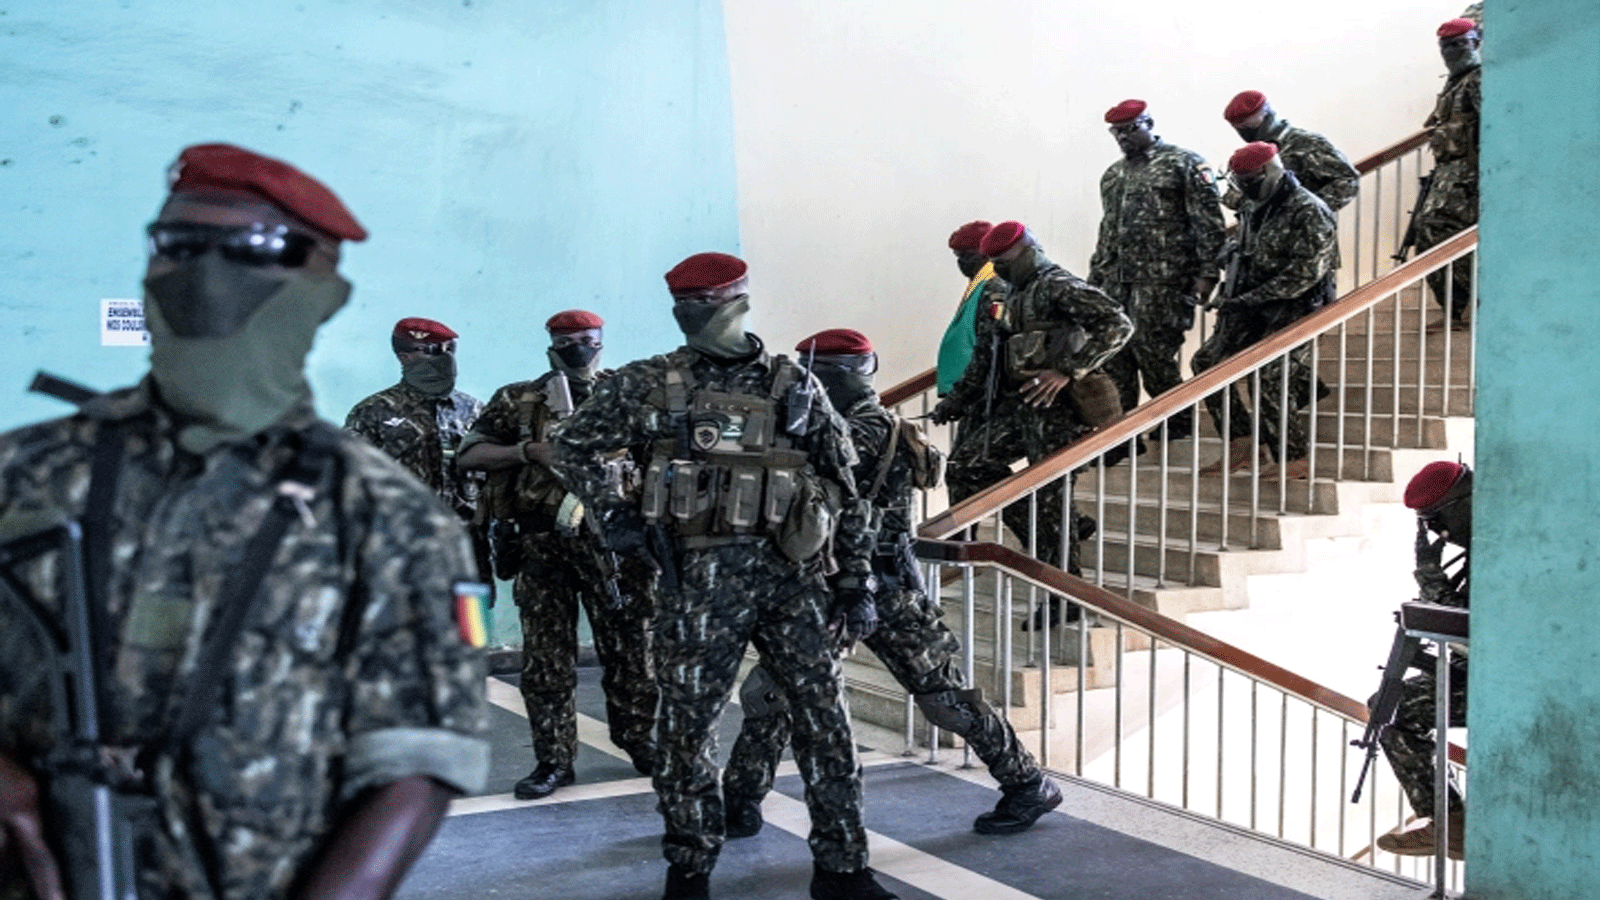 العقيد مامادي دومبويا (الرابع من اليمين) وأفراد من القوات الخاصة يغادرون قصر الشعب بعد الجلسة الأولى من المحادثات مع القادة السياسيين في كوناكري